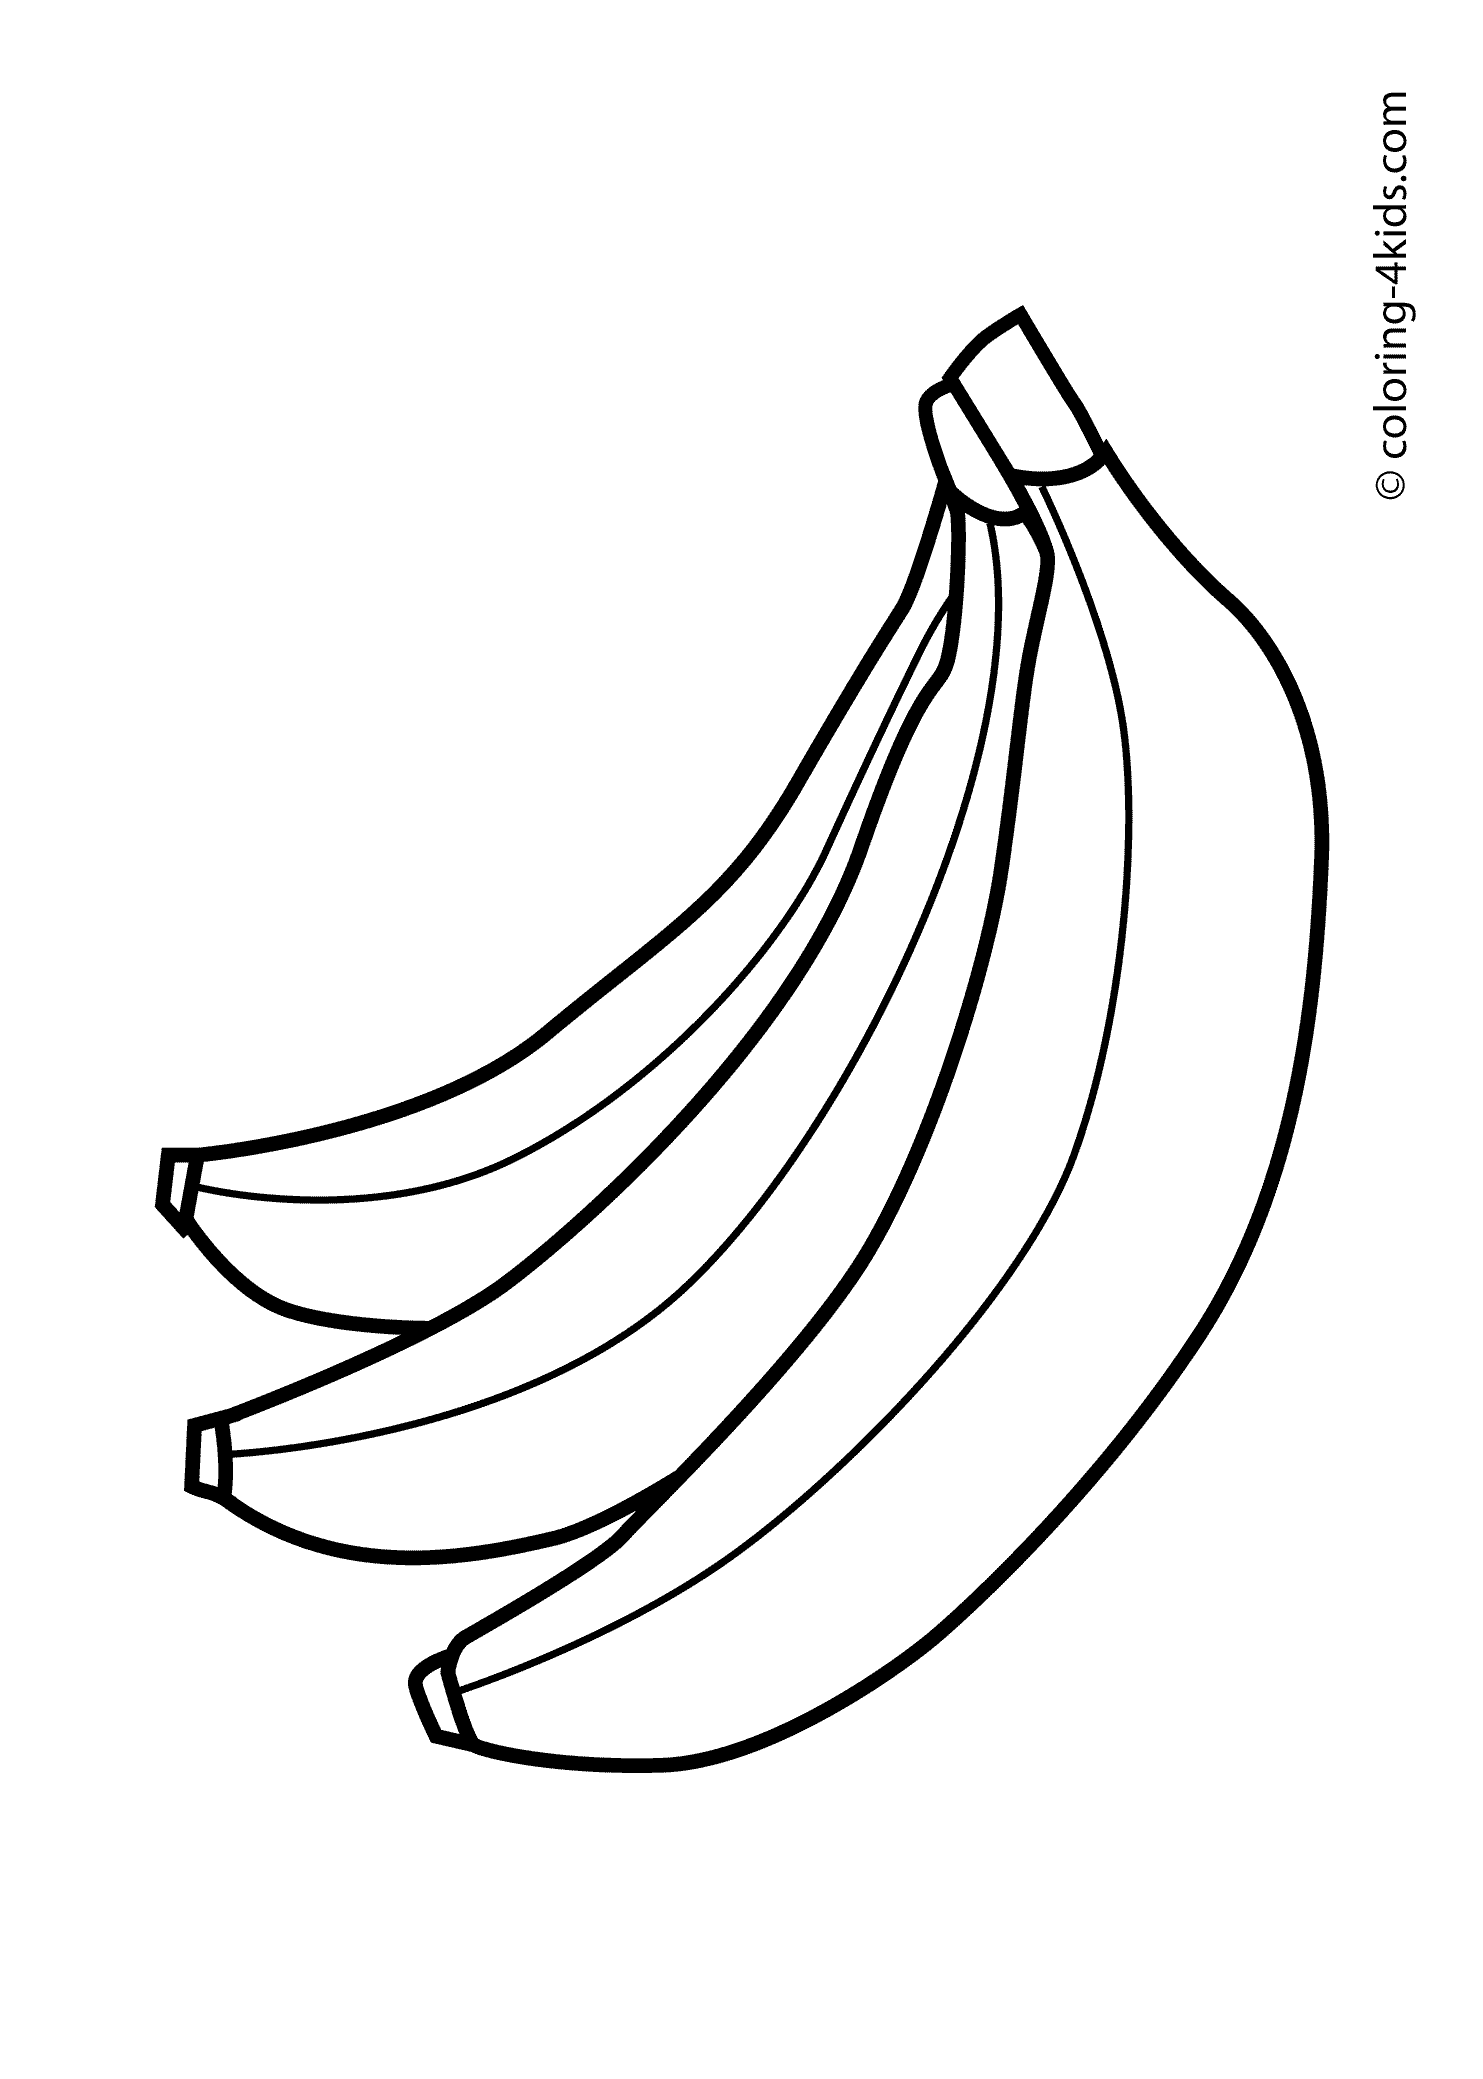 Bananas clipart printable. Monumental banana coloring sheet